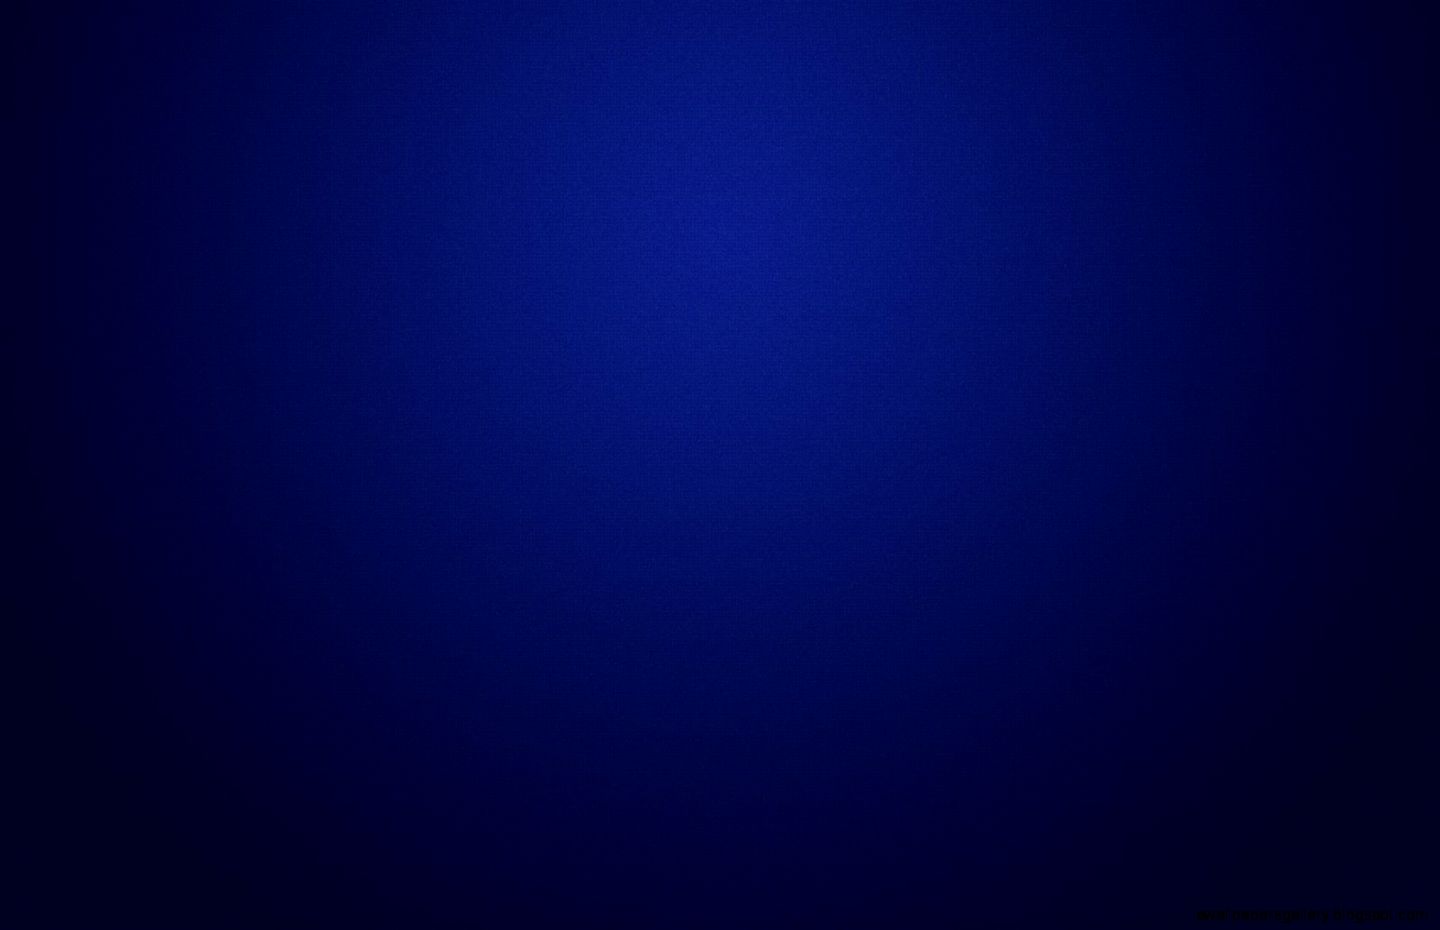 Solid Dark Blue Background Wallpaper 1440x930